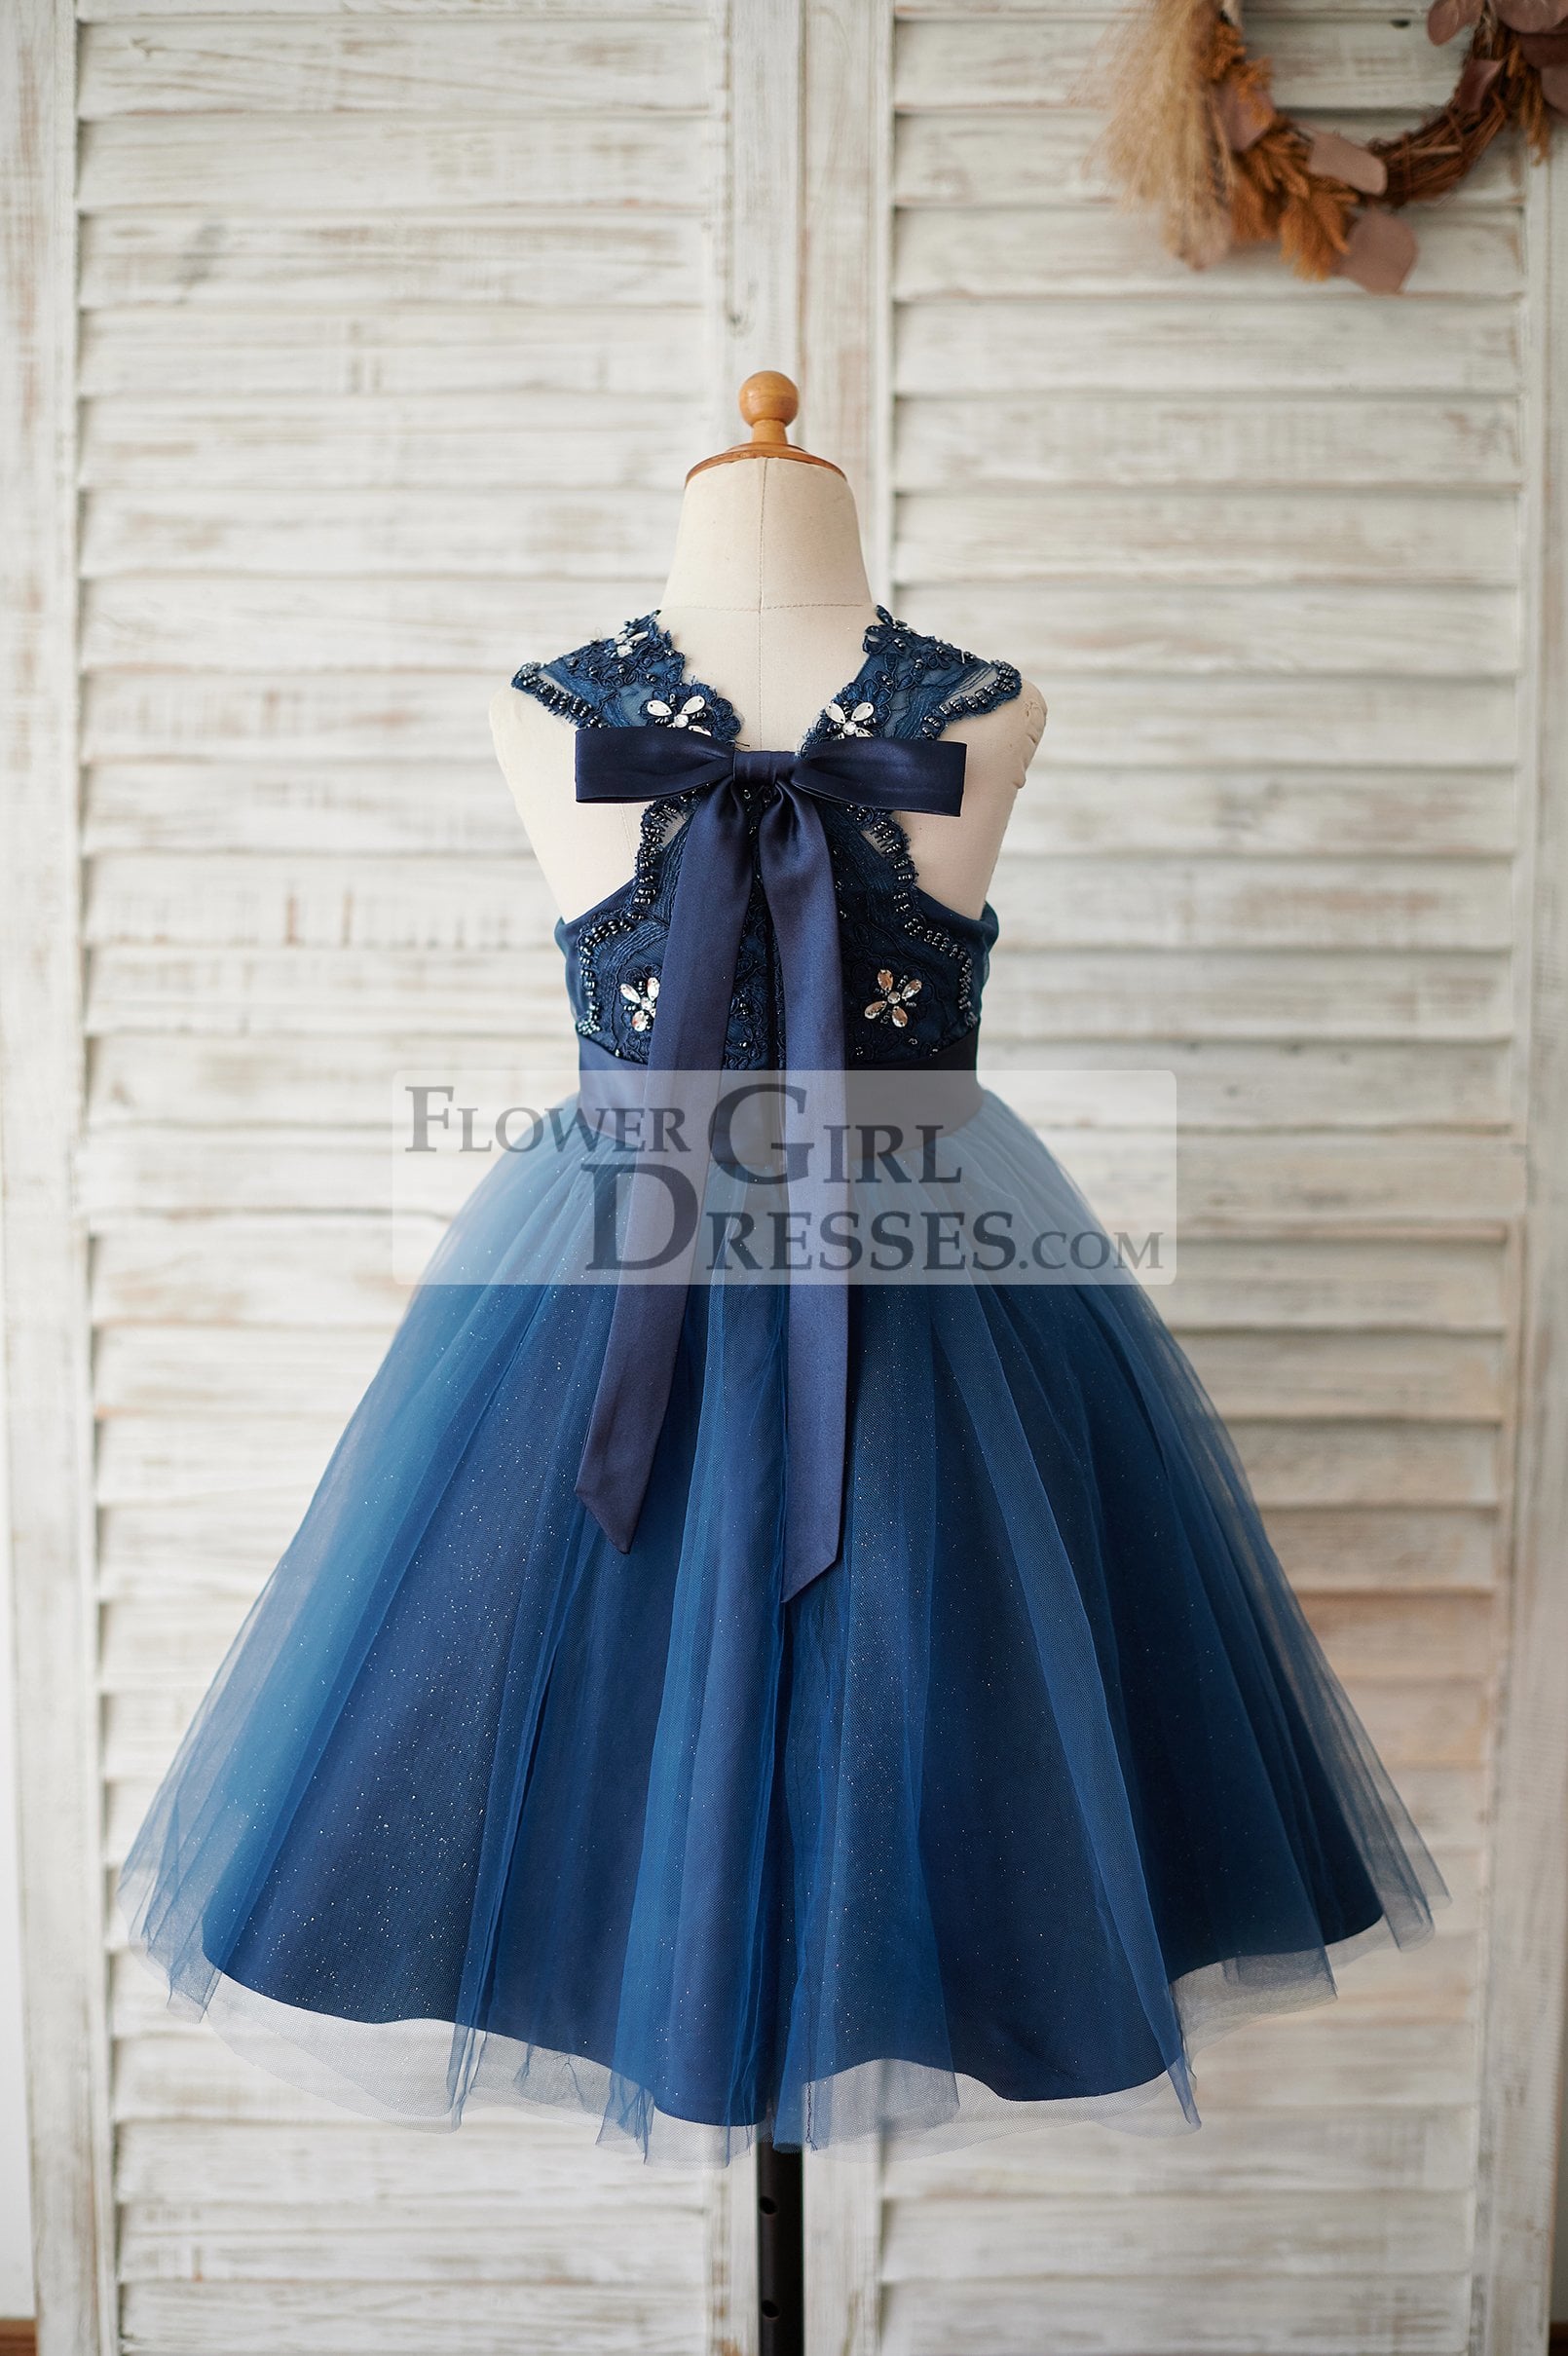 Navy Blue Lace Glitter Tulle Beaded Cross Back Wedding Flower Girl Dress